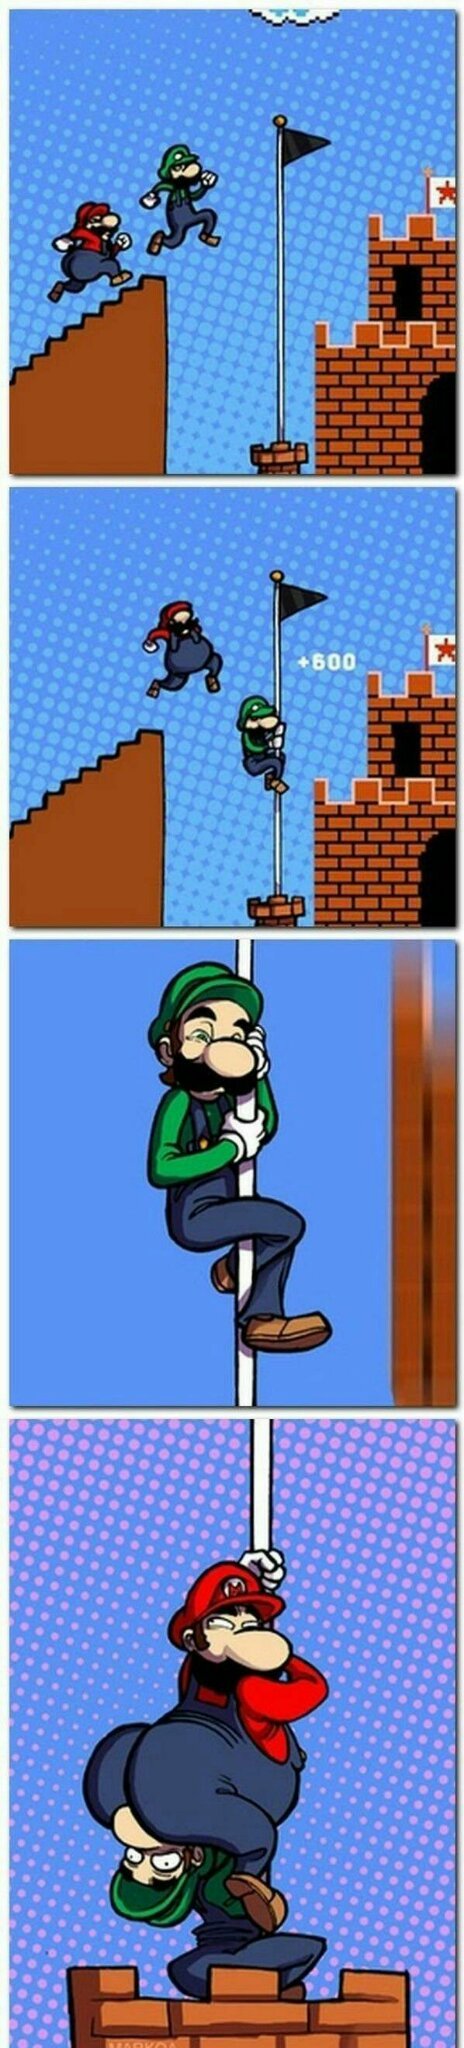 Luigi toujours dans des coups foireux - meme